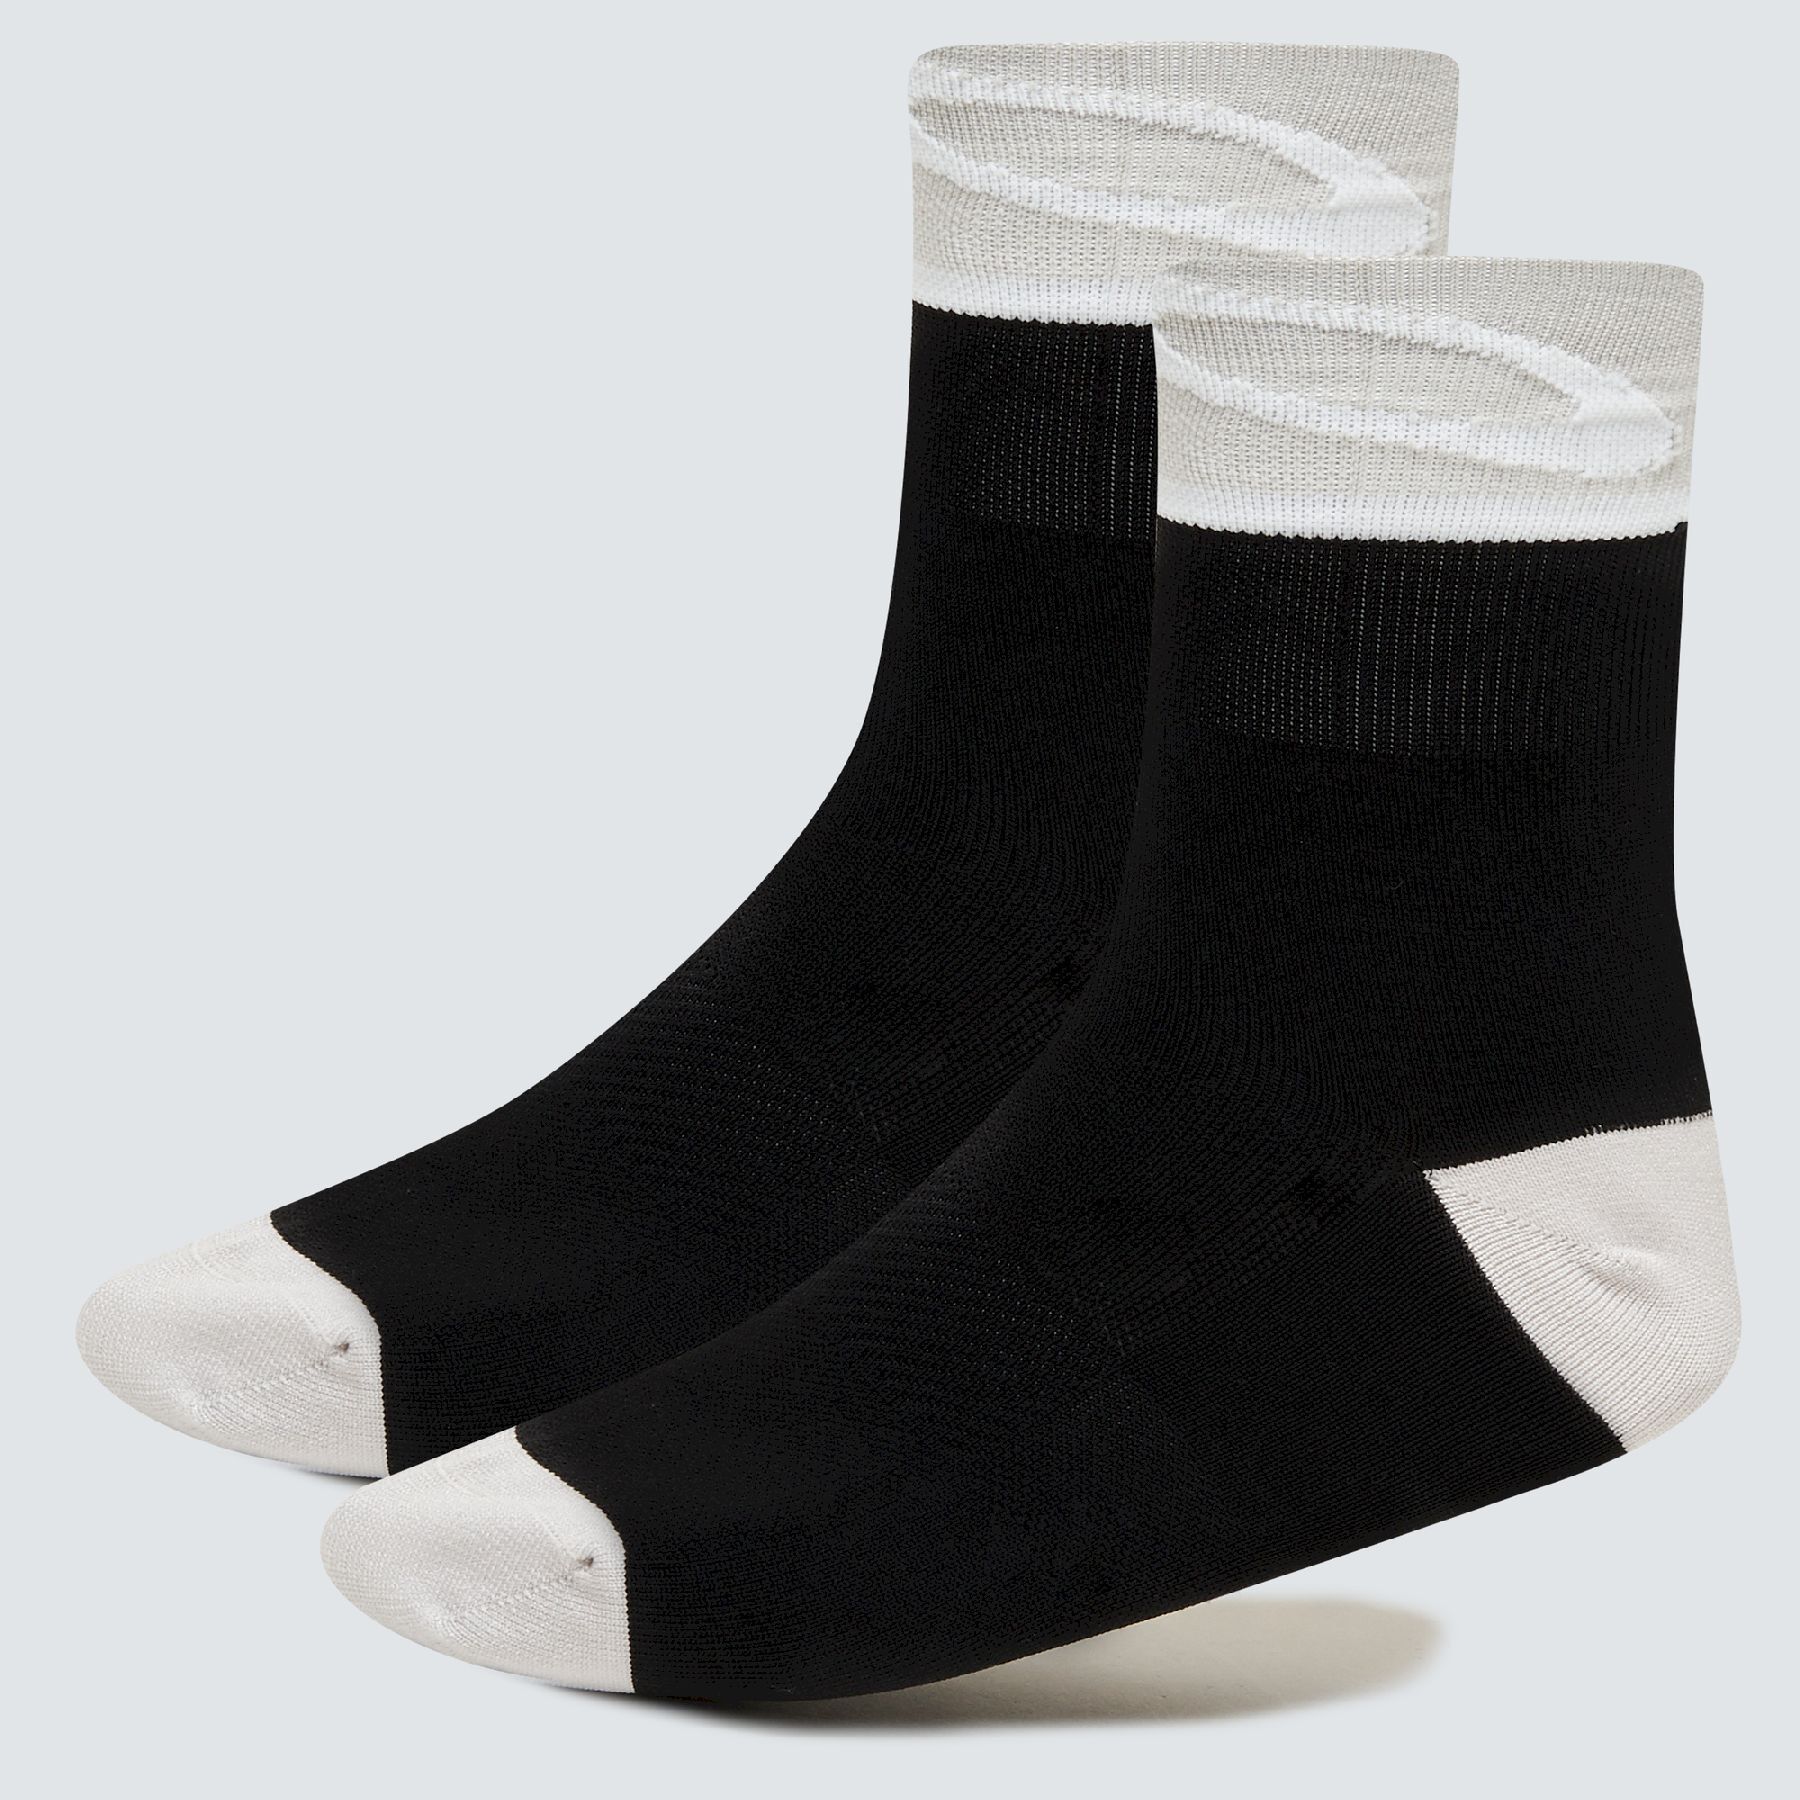 Oakley Socks 3.0 - Socks